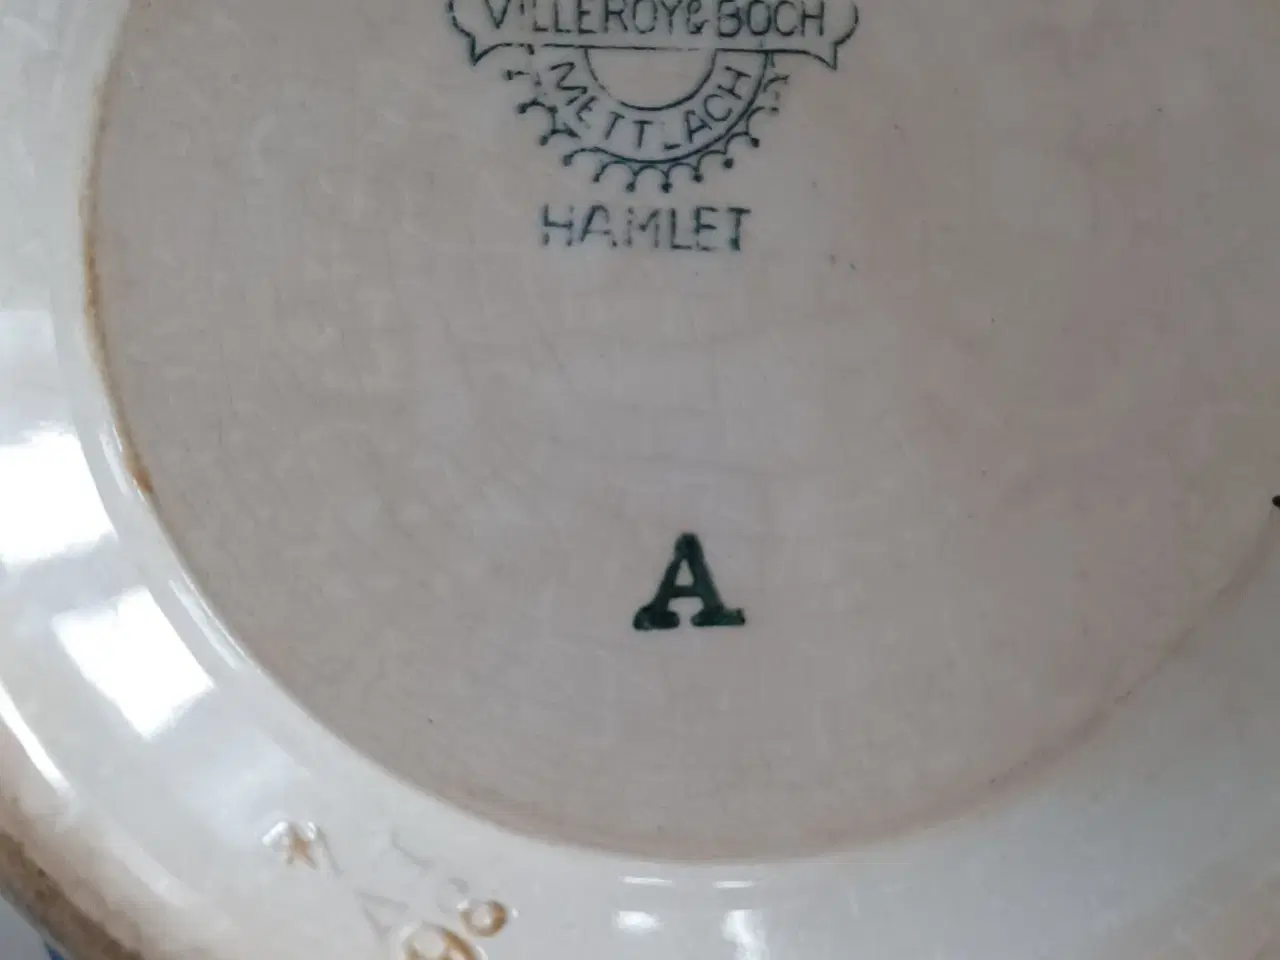 Billede 2 - Villeroye Boch porcelæn søges